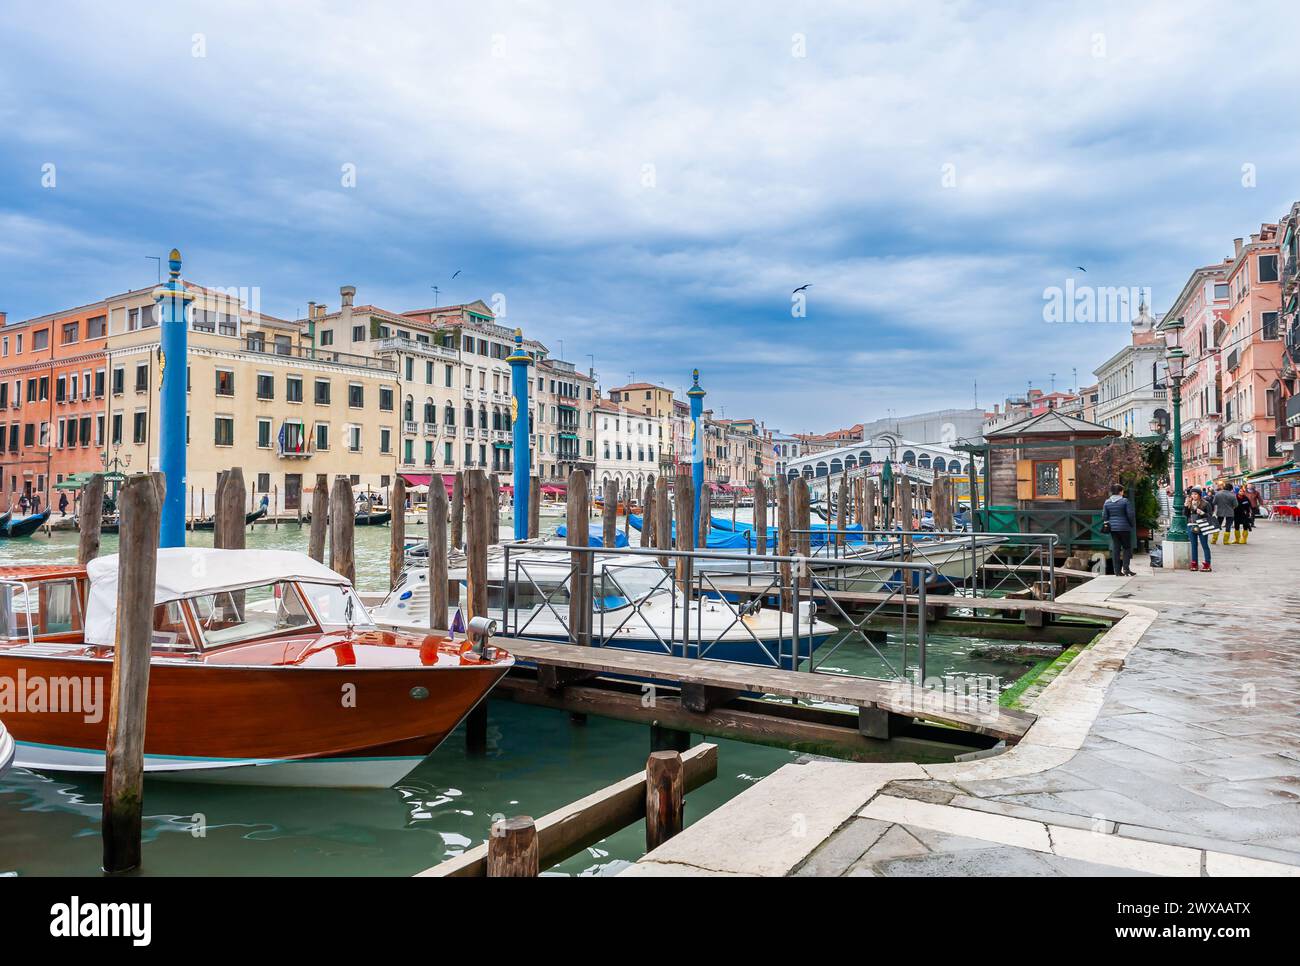 Grand Canal and Rialto Bridge in the background, Venice, Veneto, Italy Stock Photo